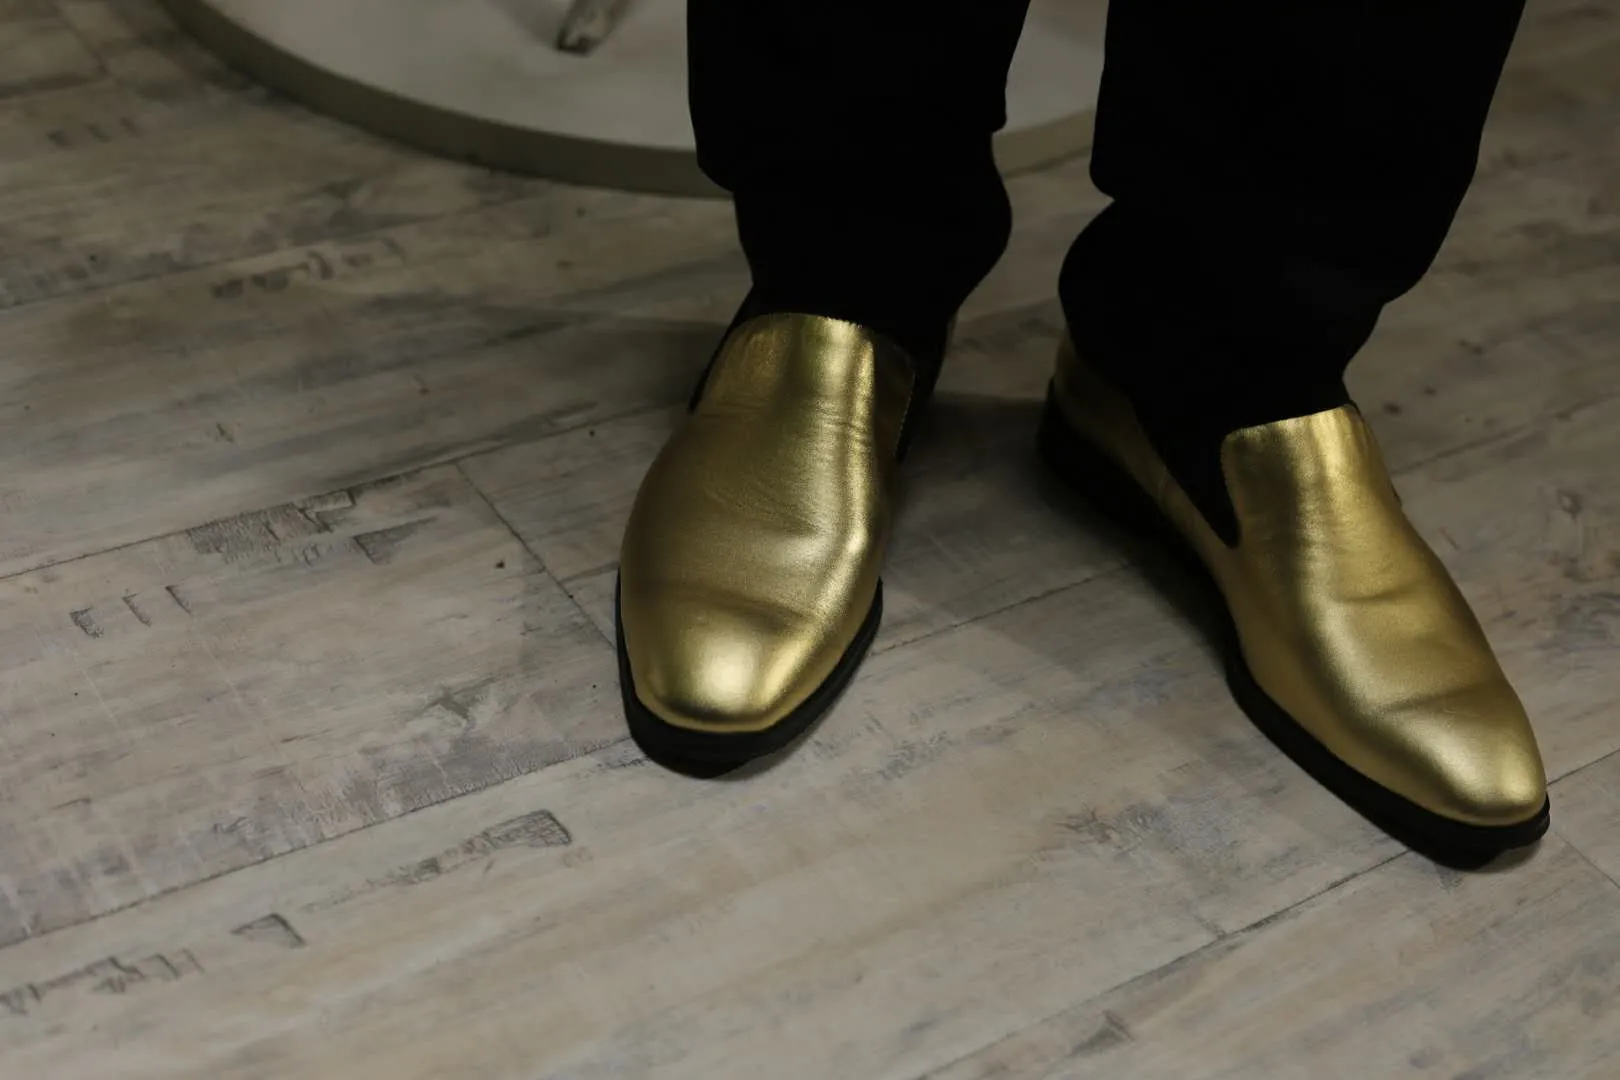 2017 высокое качество простой стиль мужская платье обувь кожаные мокасины мужской партии / свадебные туфли мода пряжки кроссовки скольжения на оксфорды обувь